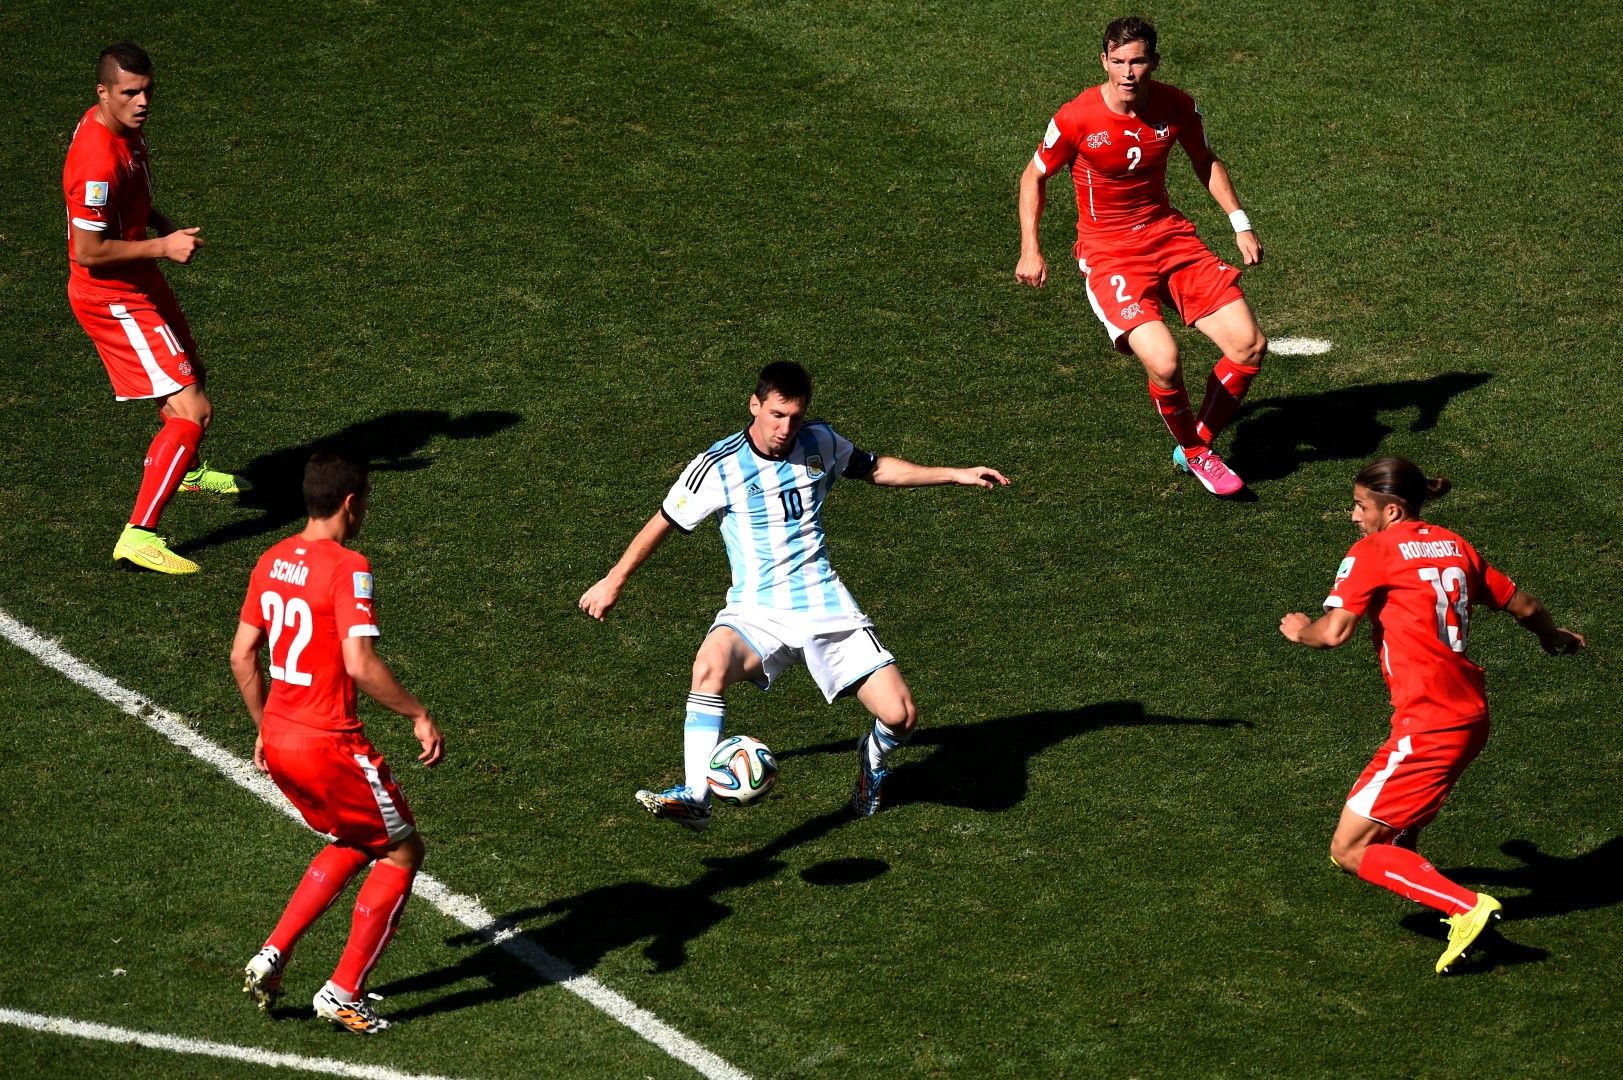 1 юли 2014 г., Аржентина - Швейцария, осминафинал. Типична гледка от мача, в който швейцарците спират Меси да играе. Но в 118-ата минута Лео се измъква, подава на Ди Мария  и - 1:0!